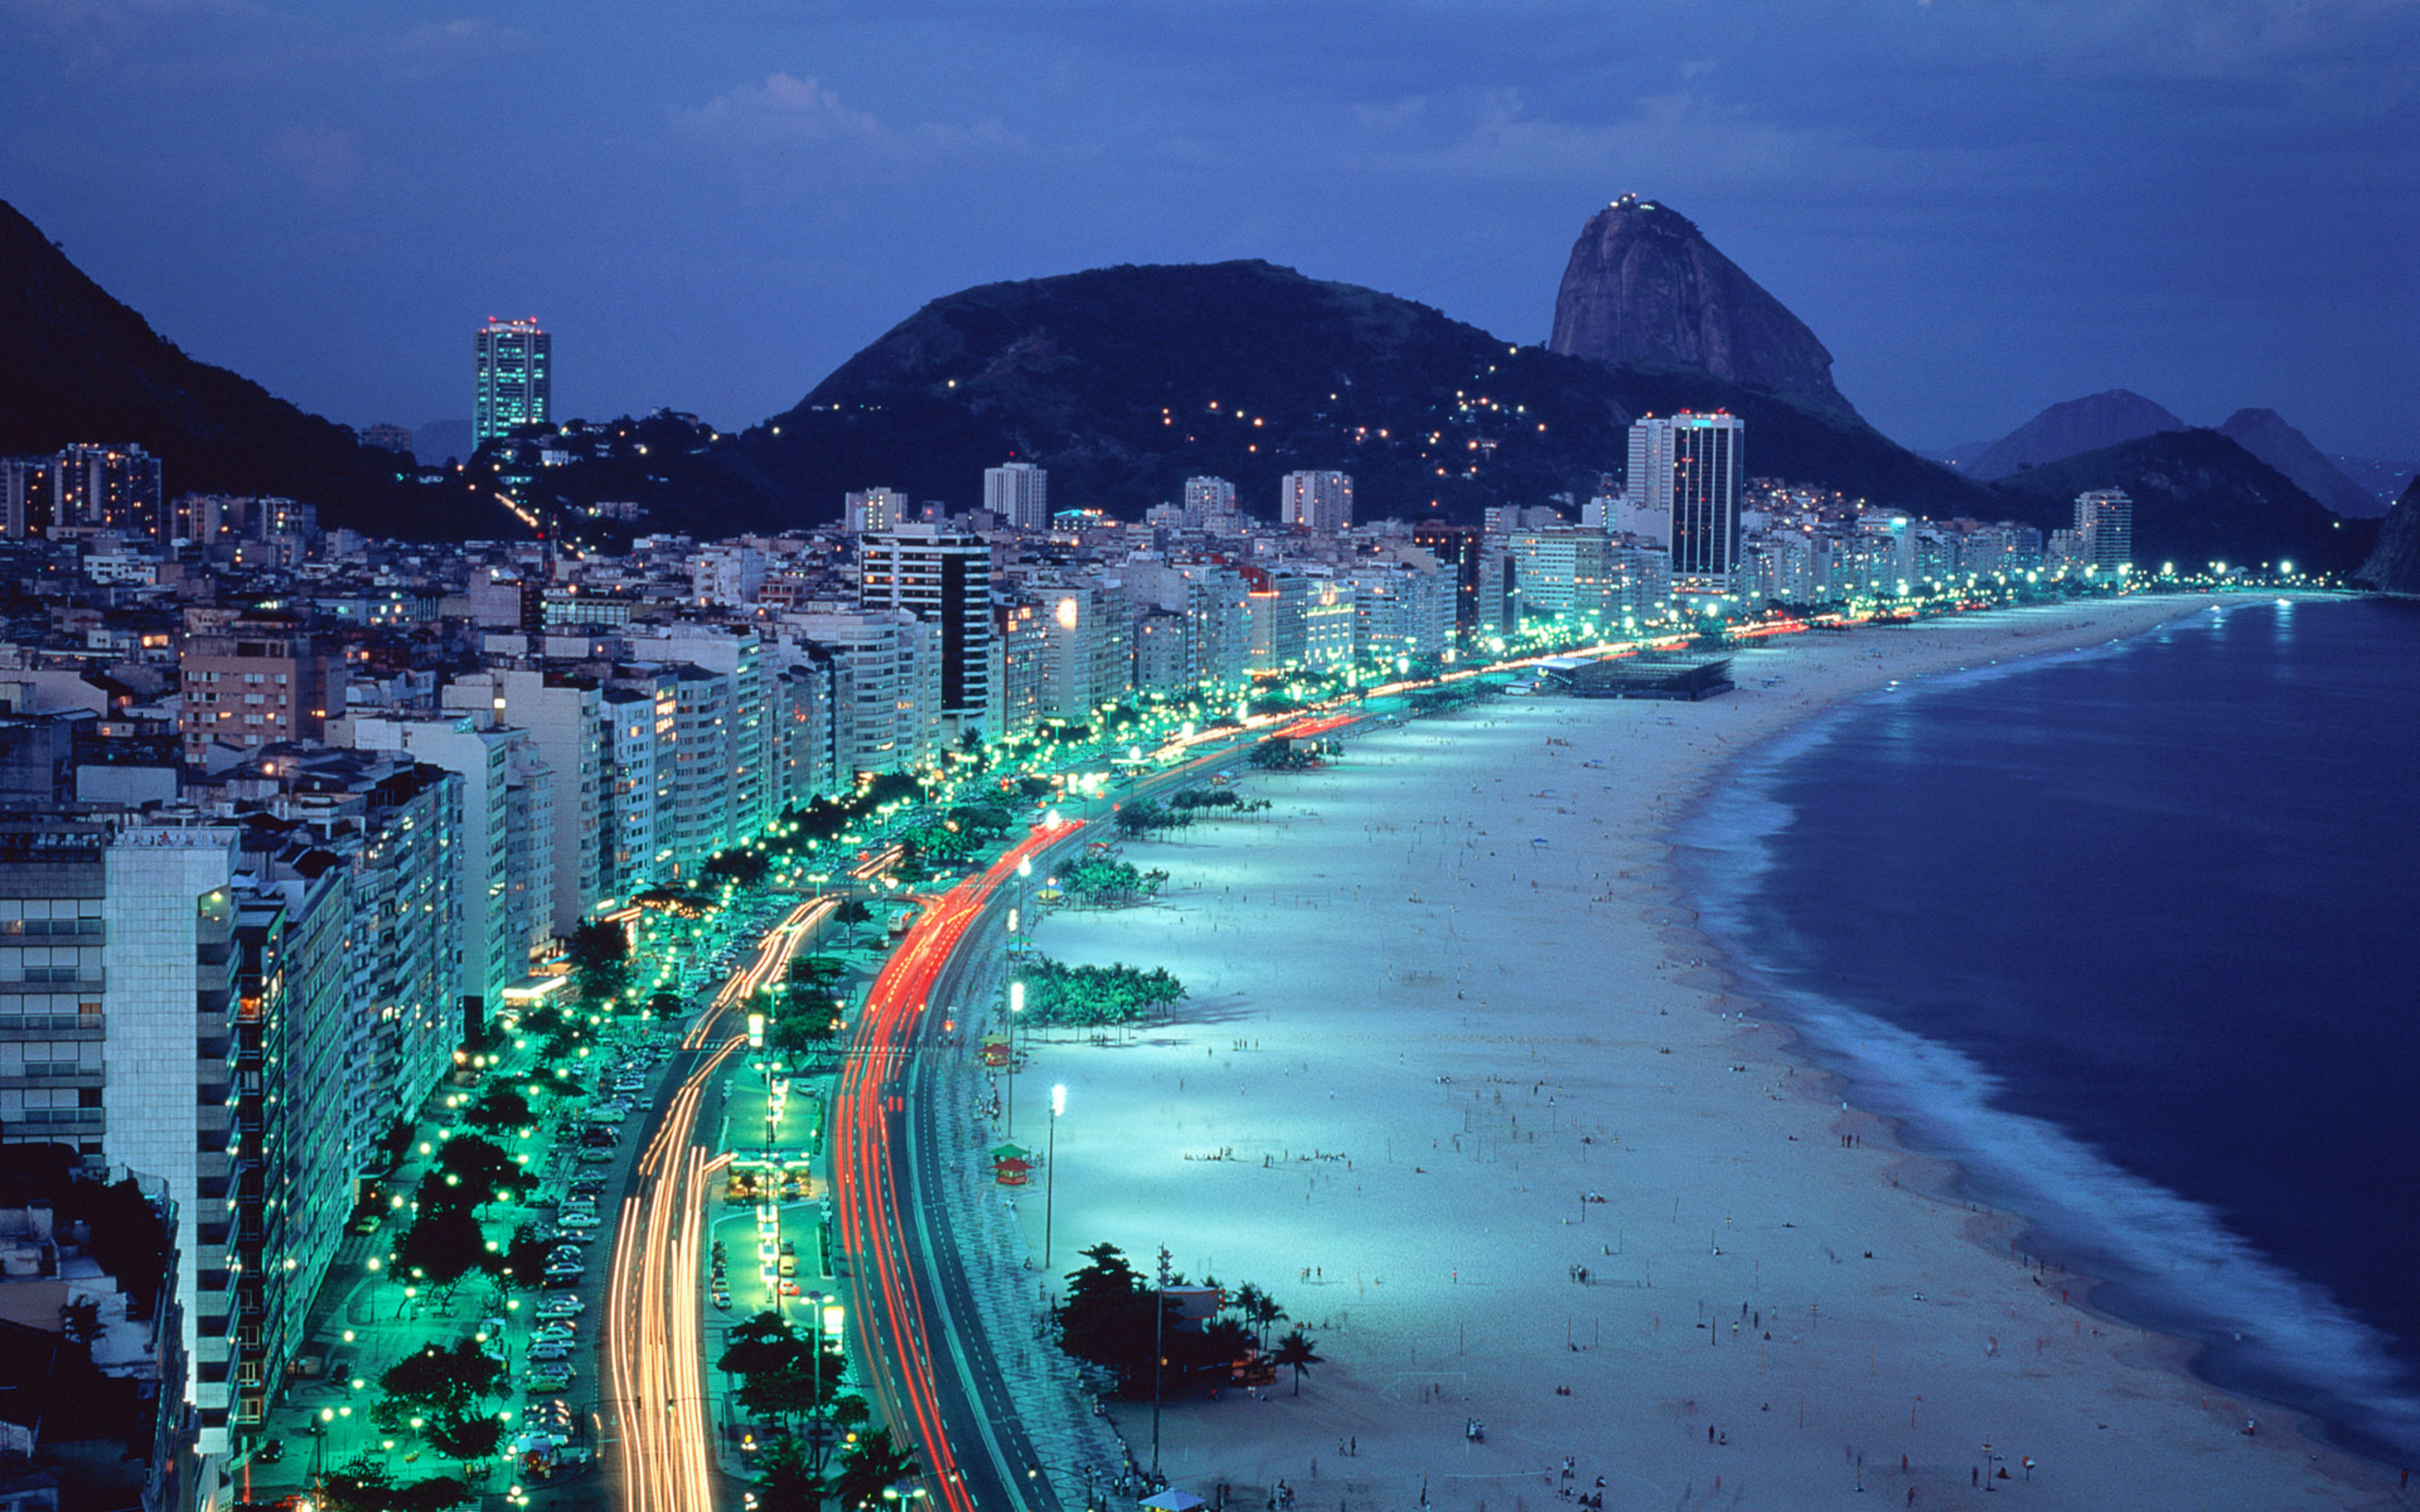 Бразилия красивые фото